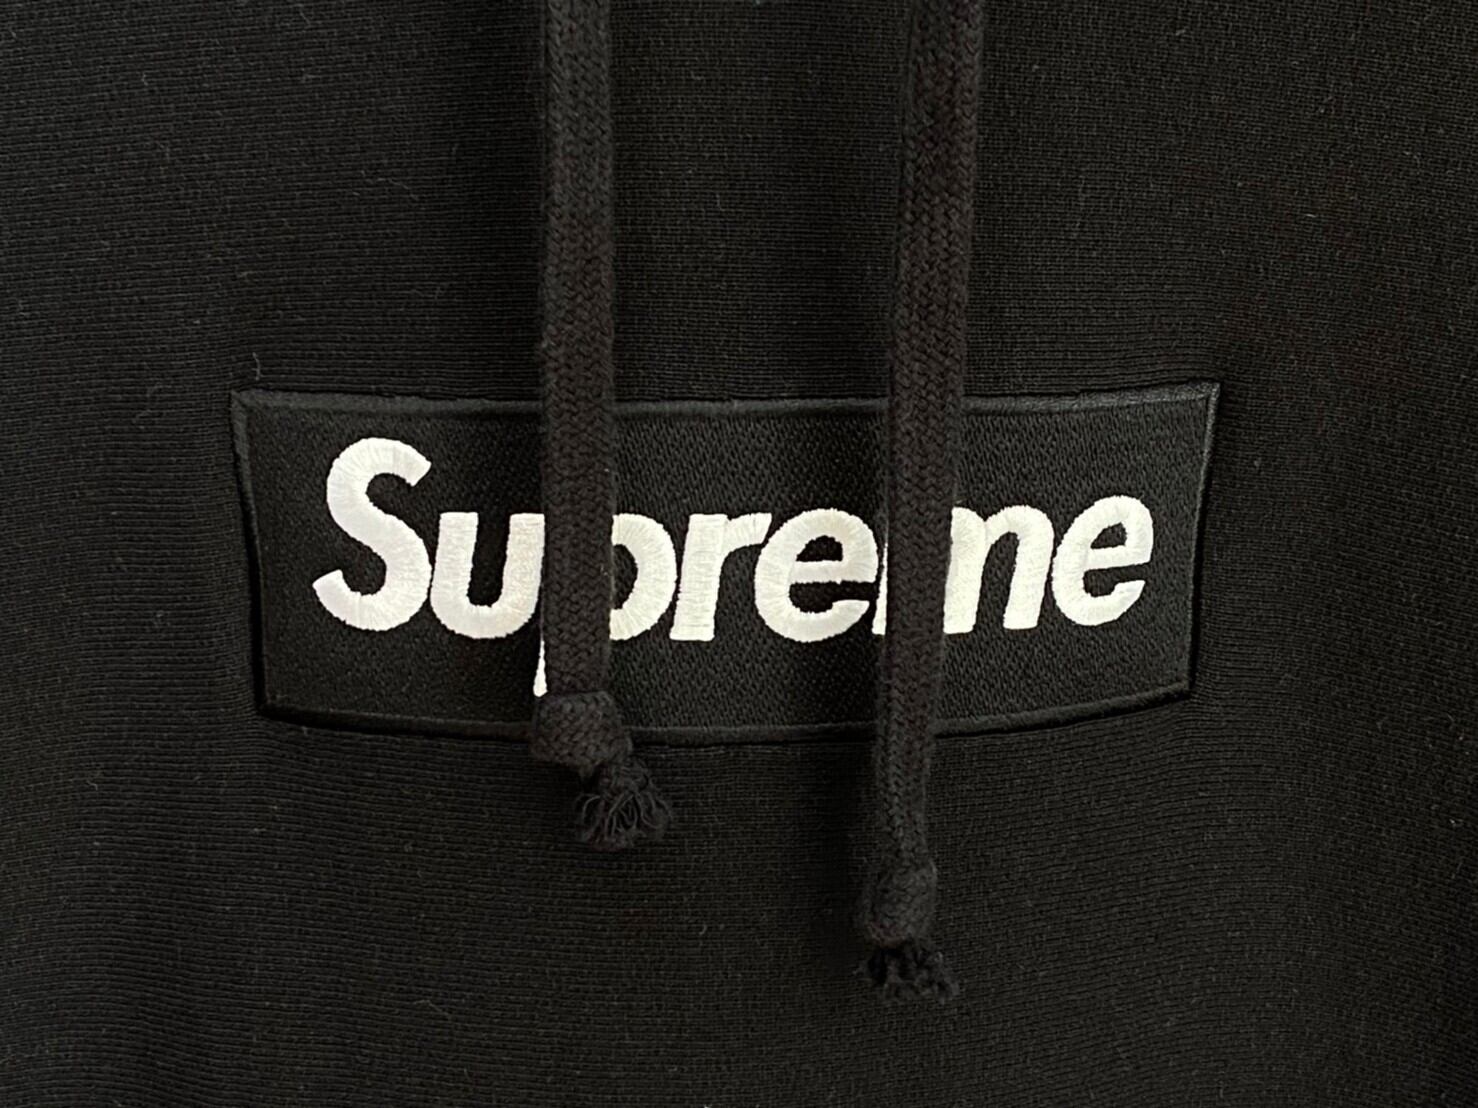 Supreme Box Logo Hooded Sweatshirt Blackパーカー